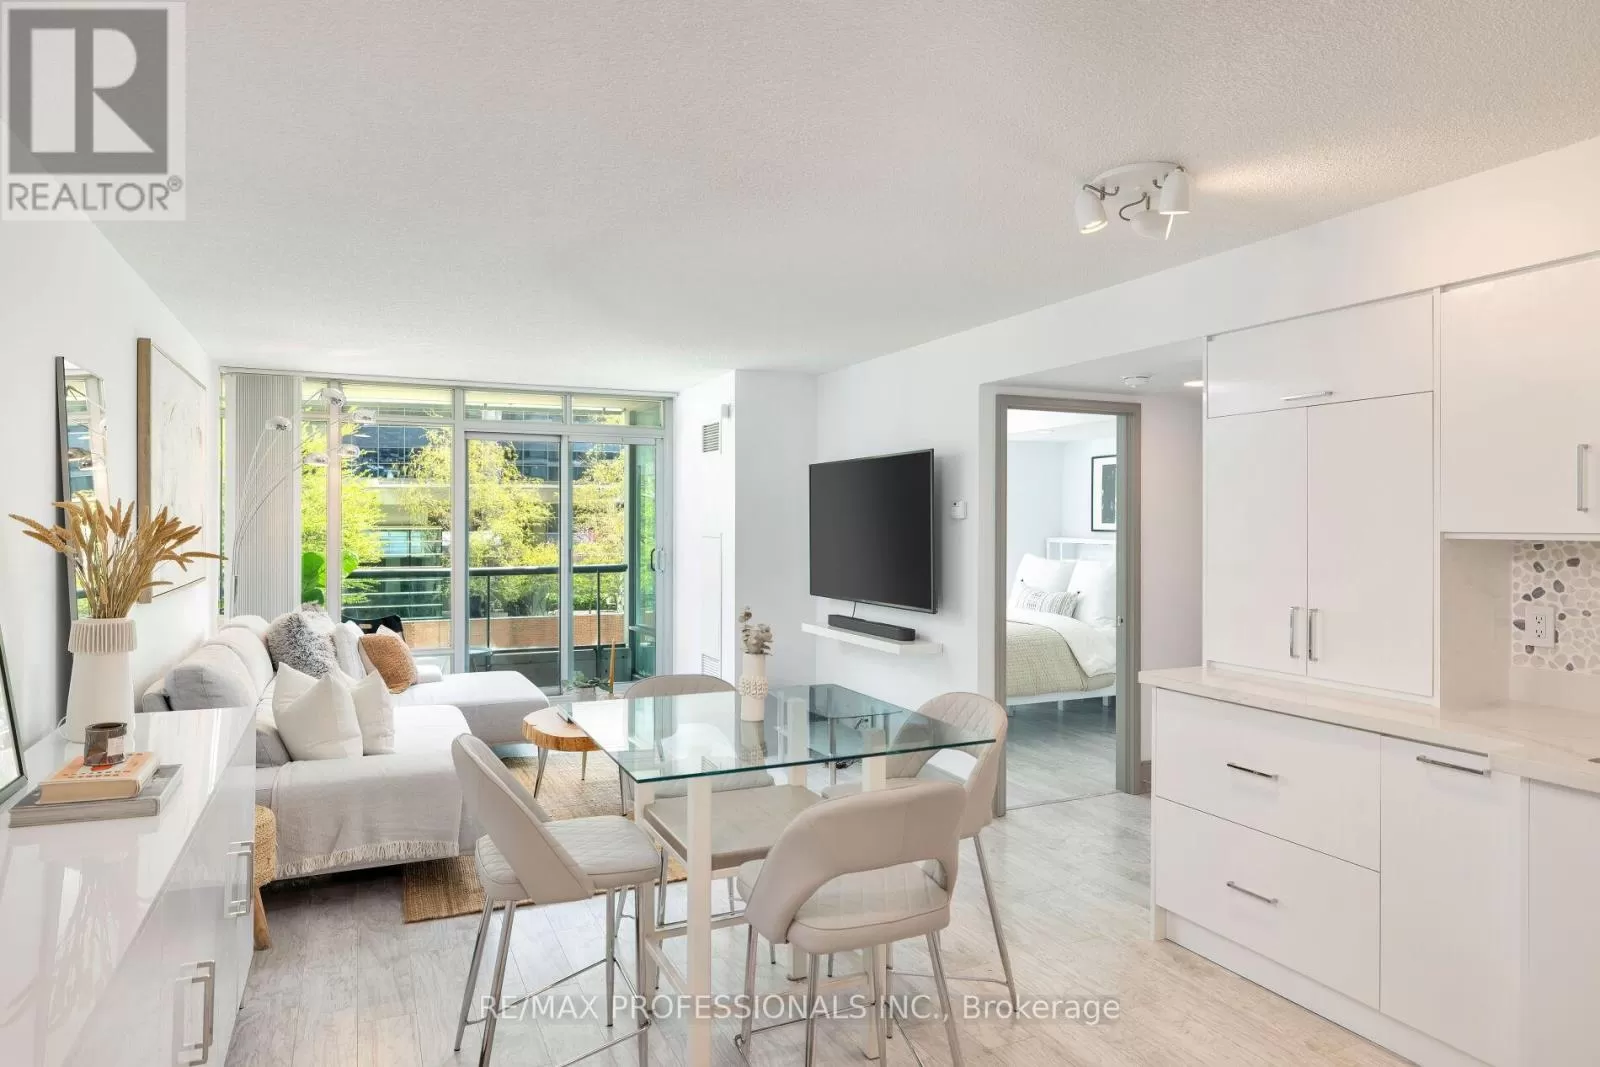 Apartment for rent: 302 - 81 Navy Wharf Court, Toronto, Ontario M5V 3S2